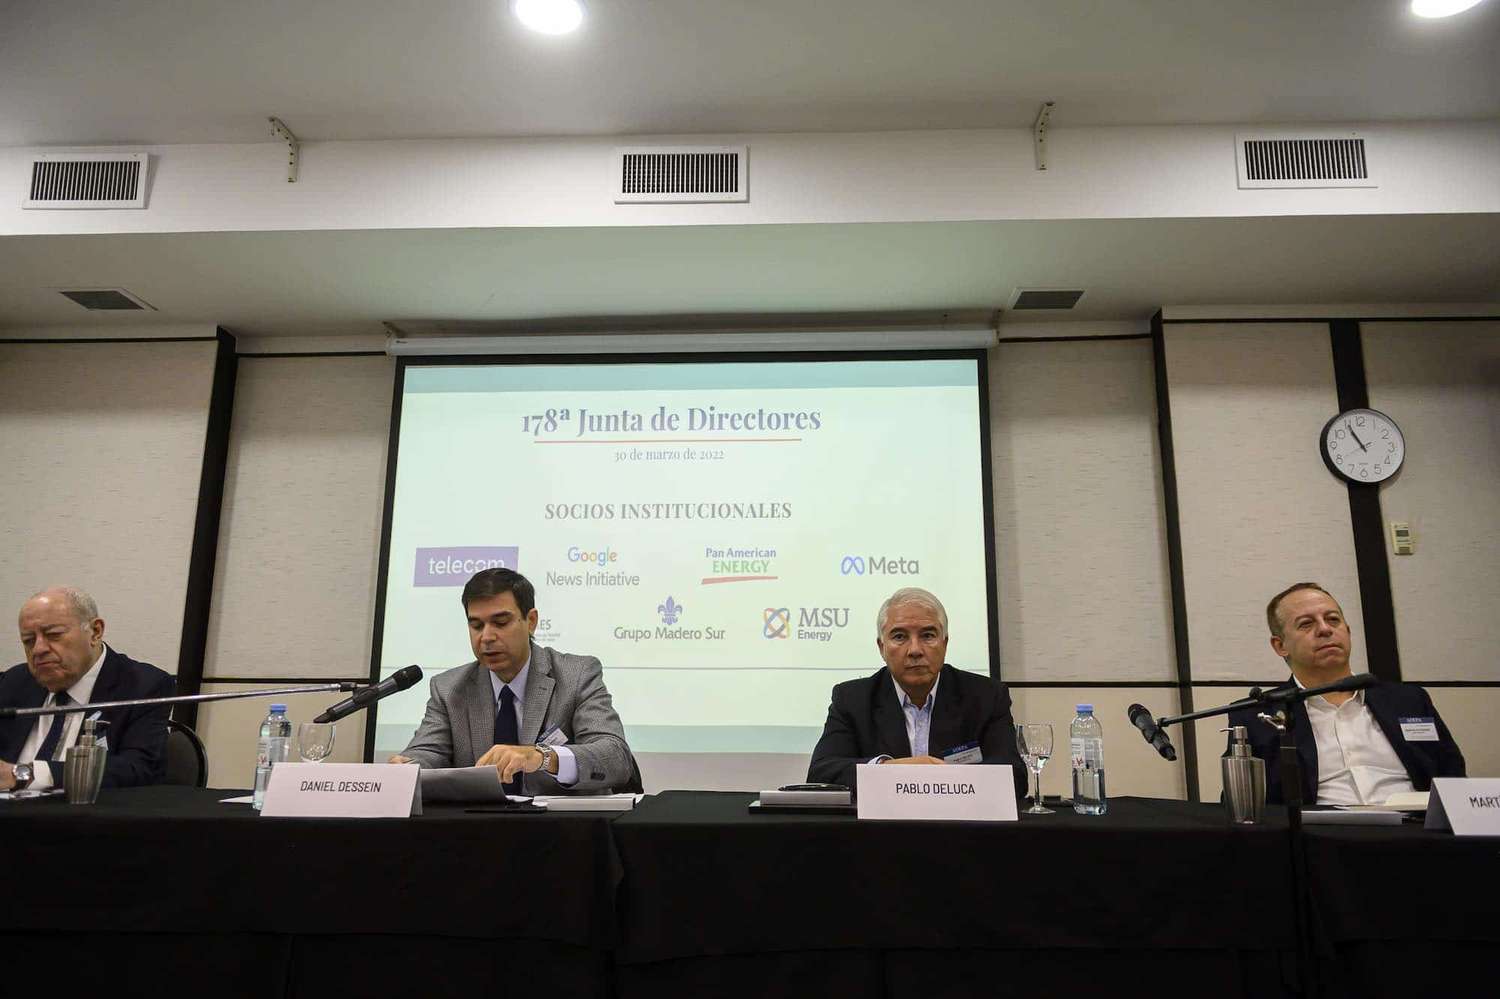 Daniel Dessein: “En un contexto crítico, la industria periodística argentina da muestras de una gran capacidad de resiliencia y modernización”